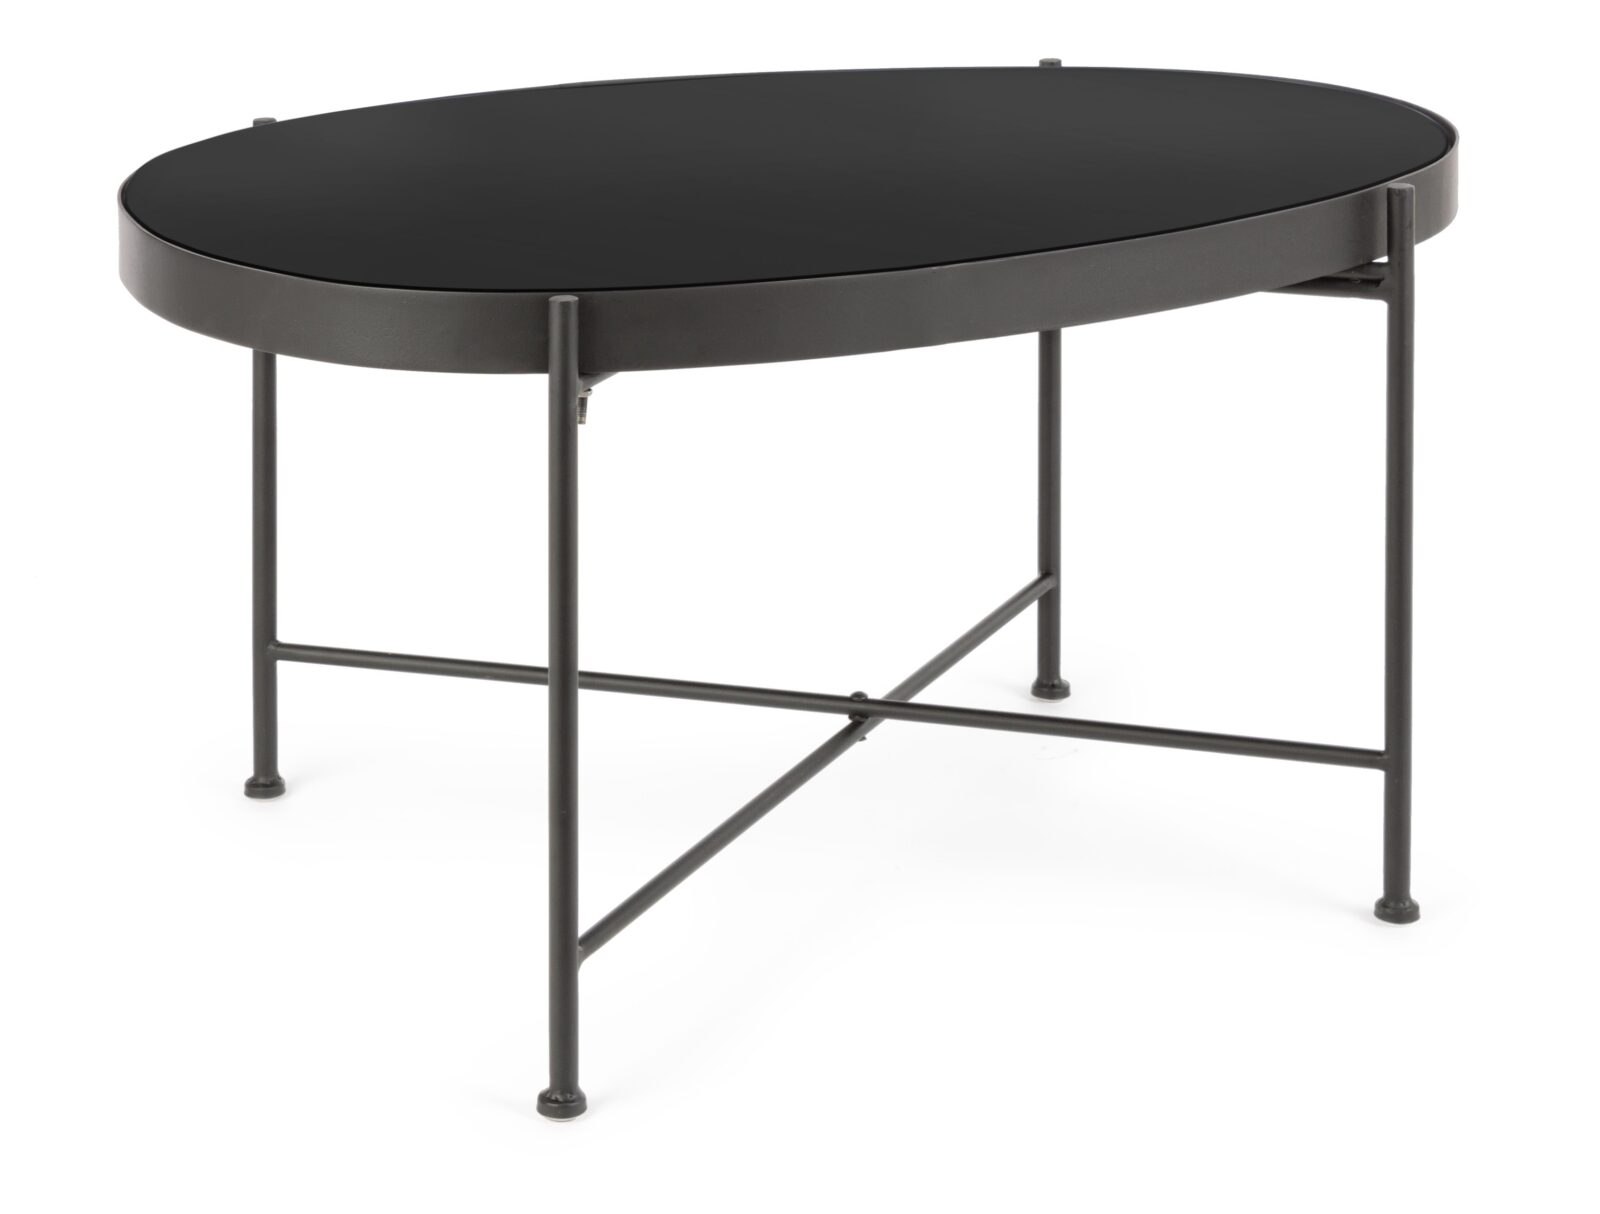 BIZZOTTO konferenční stolek RASHIDA tmavý 46x70 cm